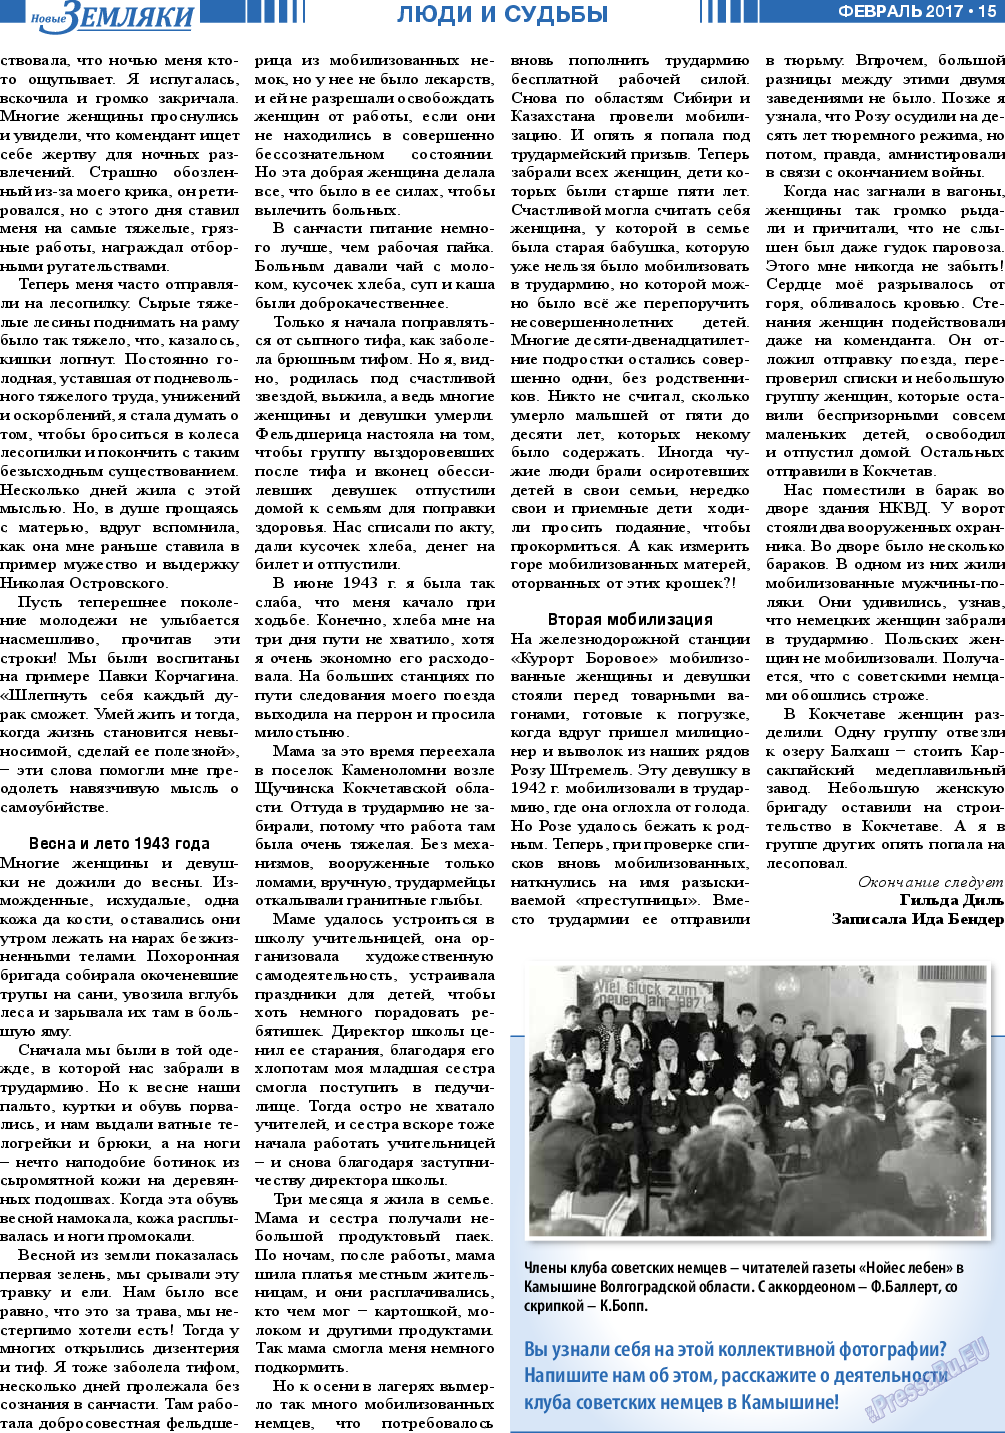 Новые Земляки (газета). 2017 год, номер 2, стр. 15